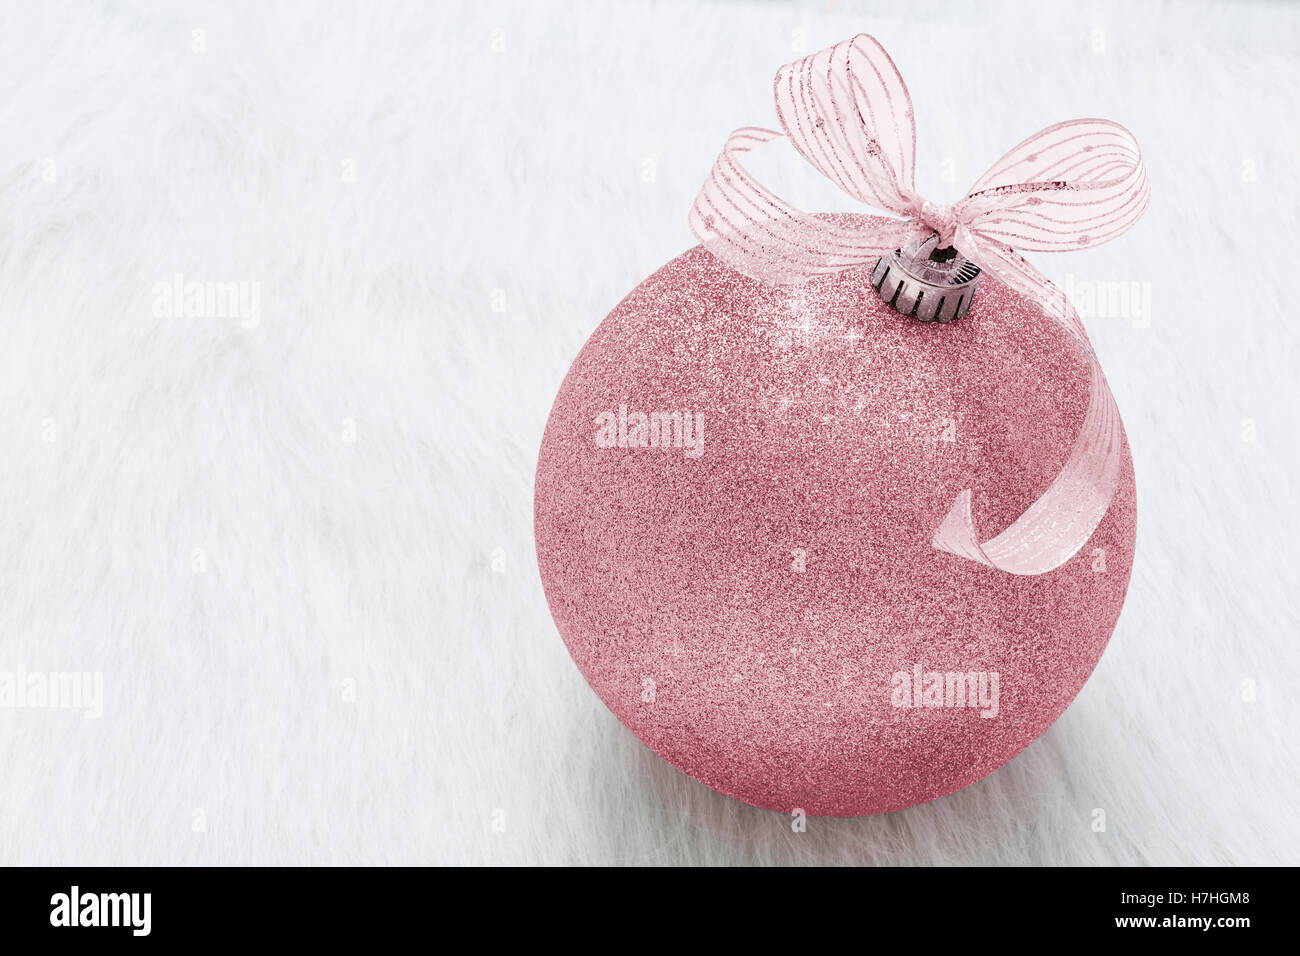 Une belle, fantaisie, parfaite, pure, brillante, rose ornement de Noël sur fond blanc horizontal Banque D'Images